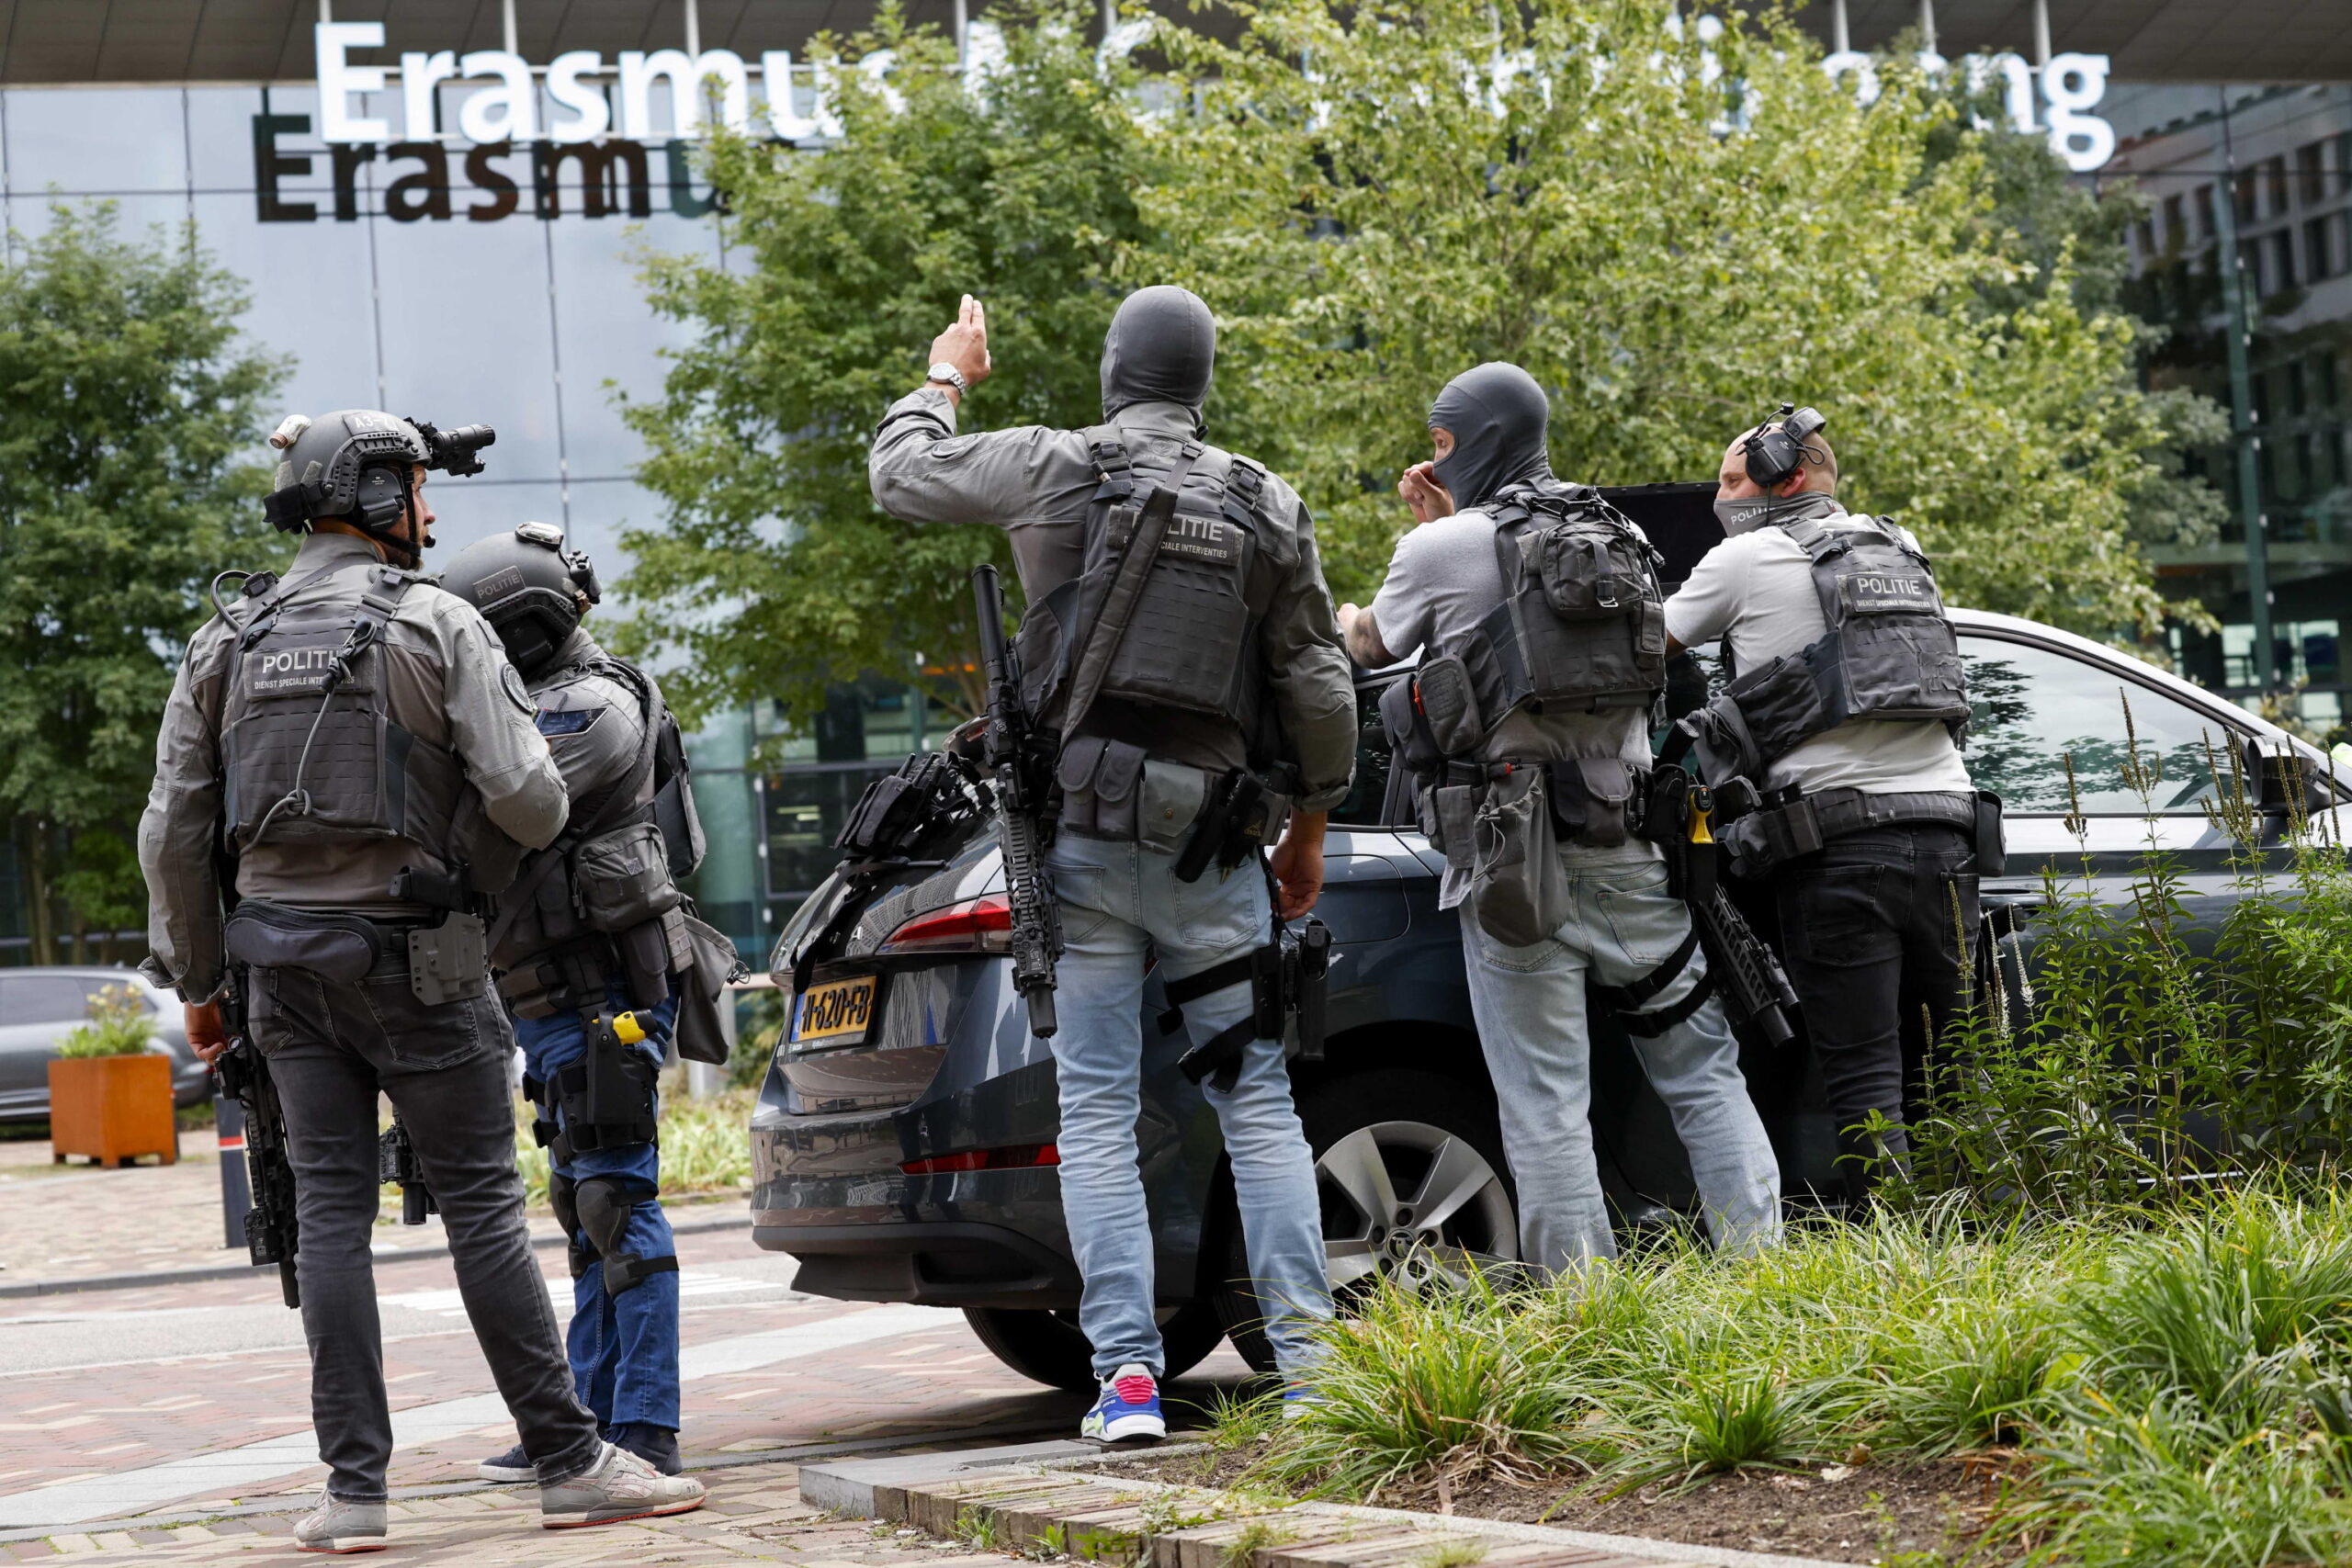 Rotterdam, sparatoria in un ospedale: arrestato un 32enne. La polizia: «Almeno due vittime, è stata un’azione mirata» – I video